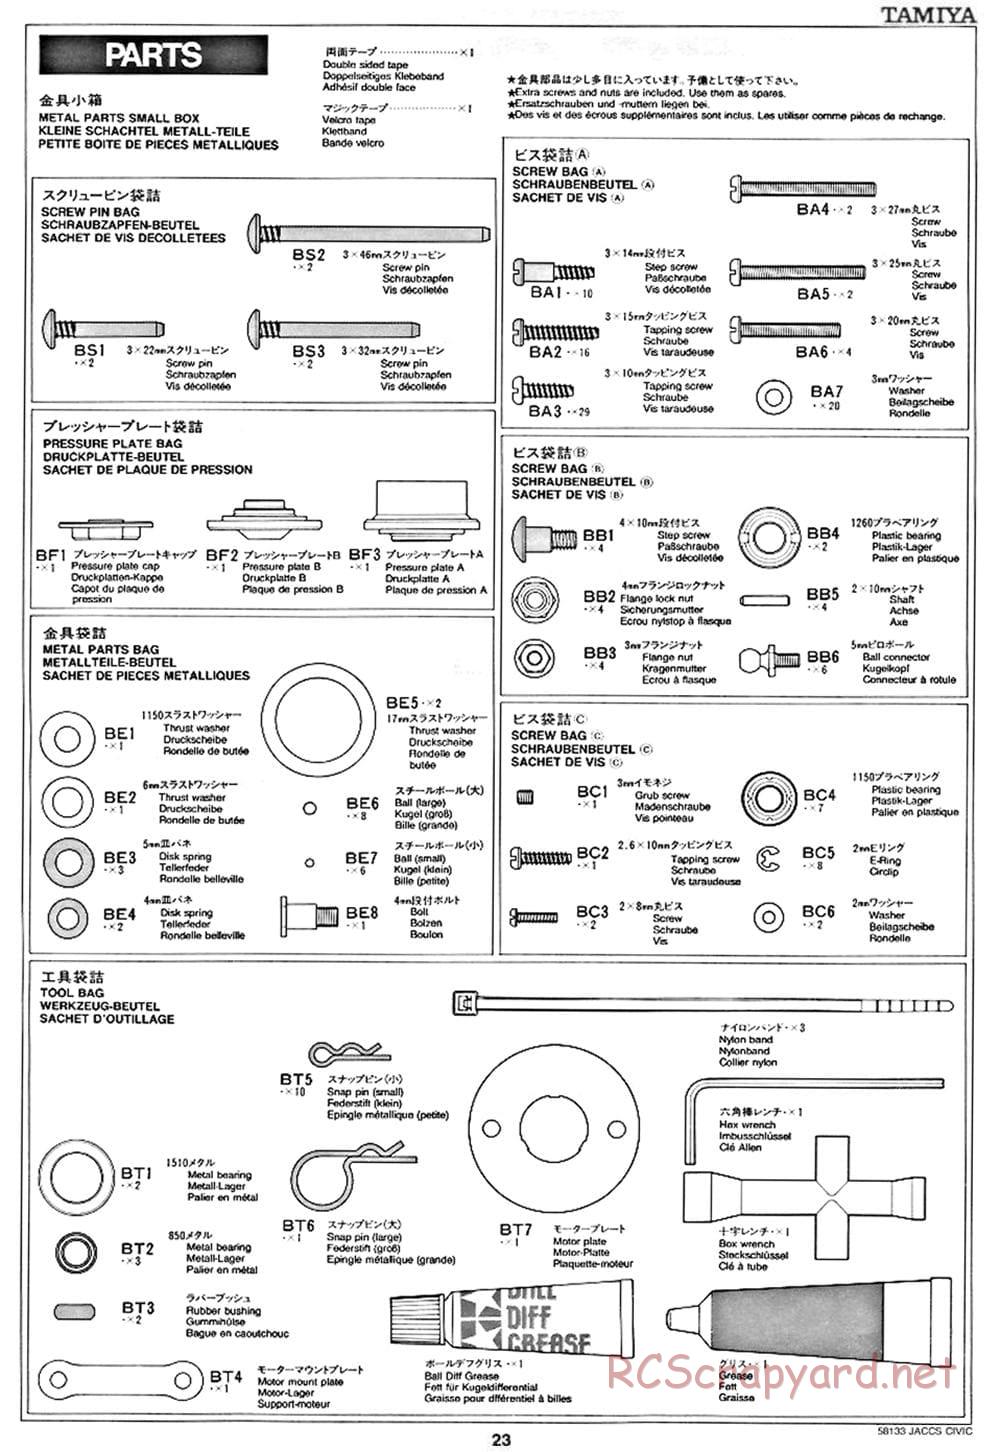 Tamiya - JACCS Honda Civic - FF-01 Chassis - Manual - Page 23